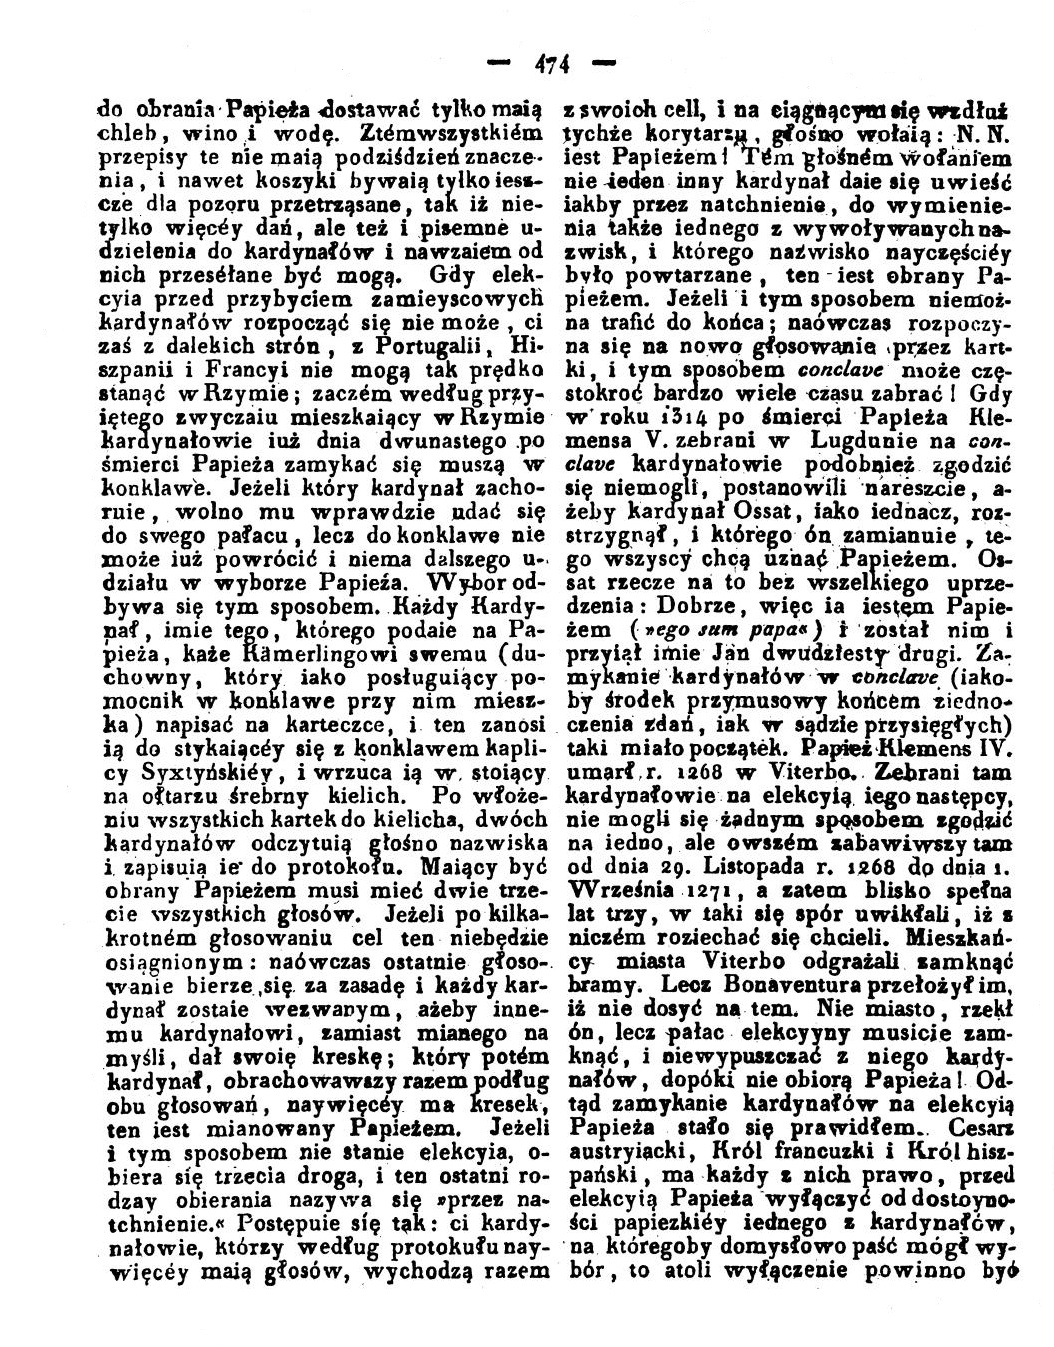 Nakadem Redakcji. (Drukiem Józefa Pillera). "Rozmaitoci". We rod. Nr 60. 15 Padziernika 1823, s. 473.